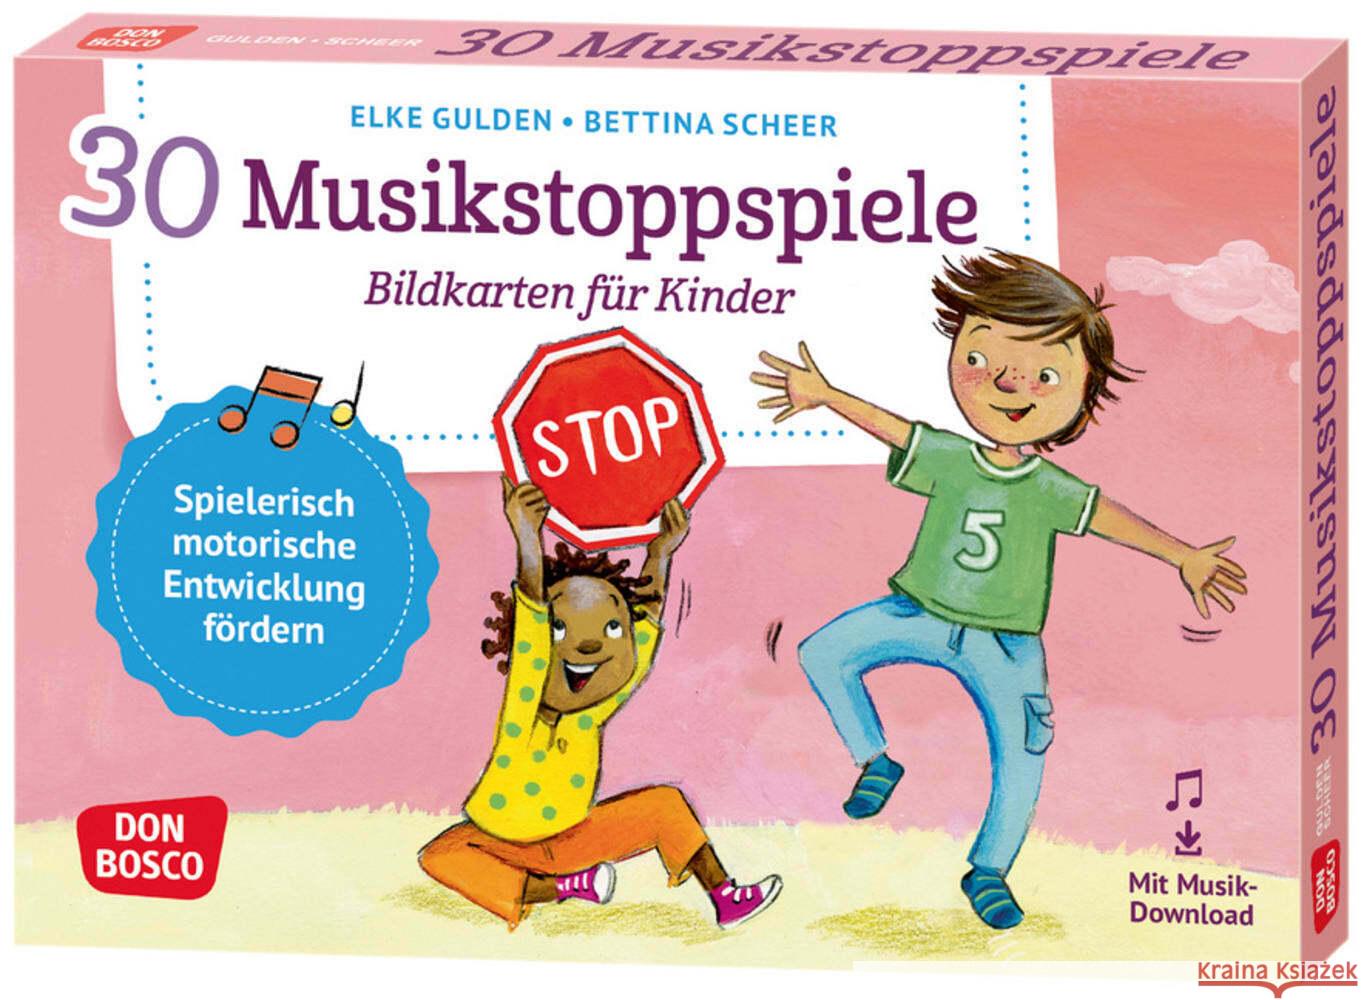 30 Musikstoppspiele. Bildkarten für Kinder, m. 1 Beilage Gulden, Elke, Scheer, Bettina 4260179517099 Don Bosco Medien - książka